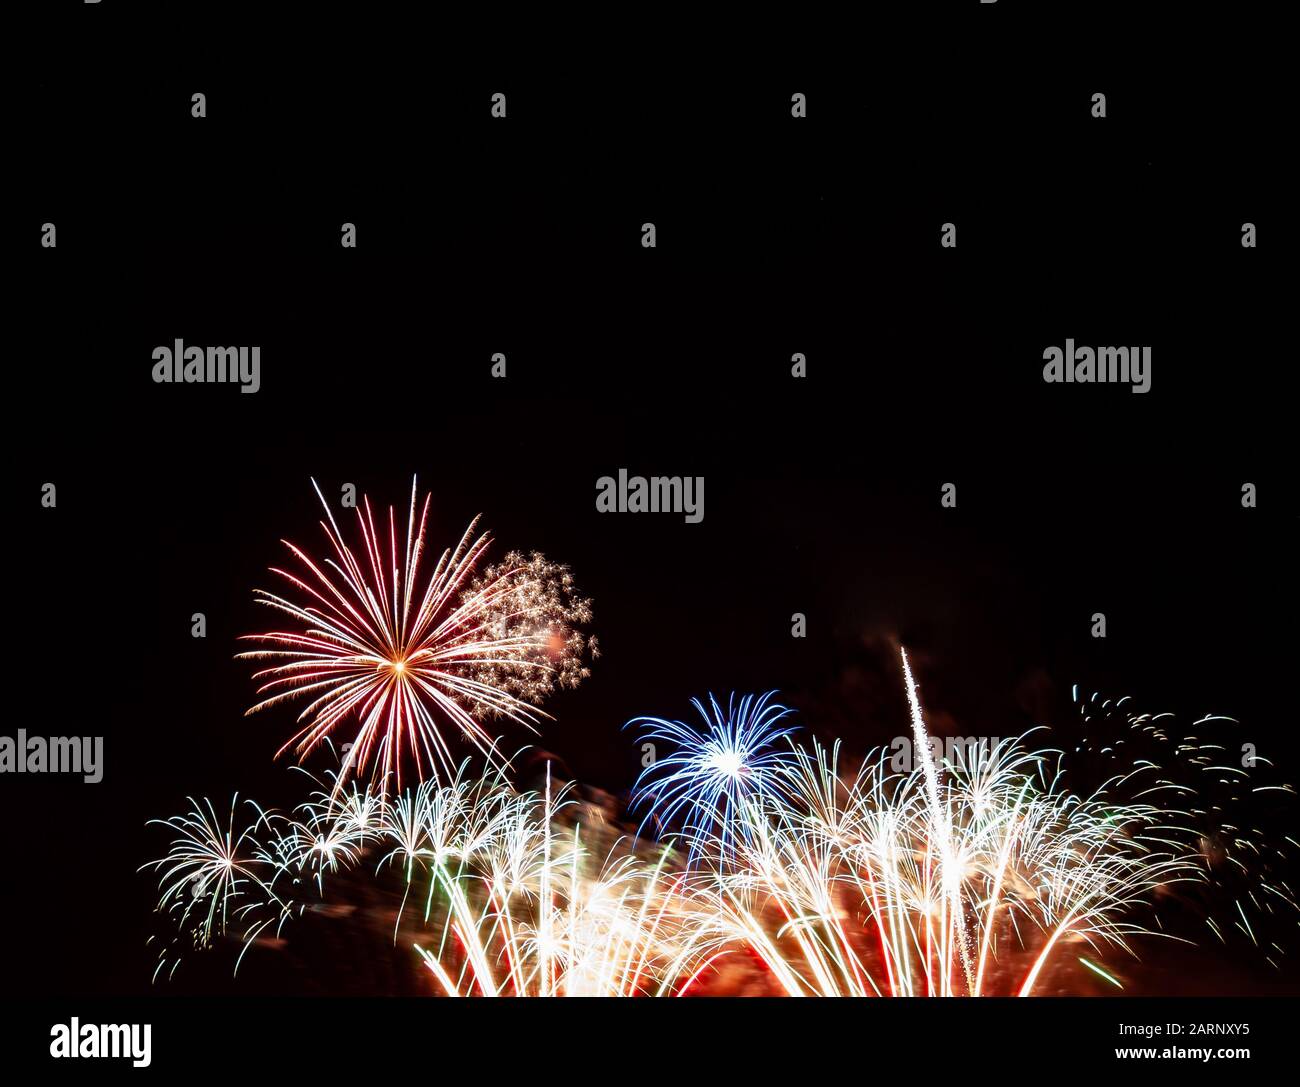 Rotes Starburst, blaues Starburst über goldenem und weißem Feuerwerk, das am vierten Juli in Minnesota gegen einen schwarzen Himmel fotografiert wurde Stockfoto